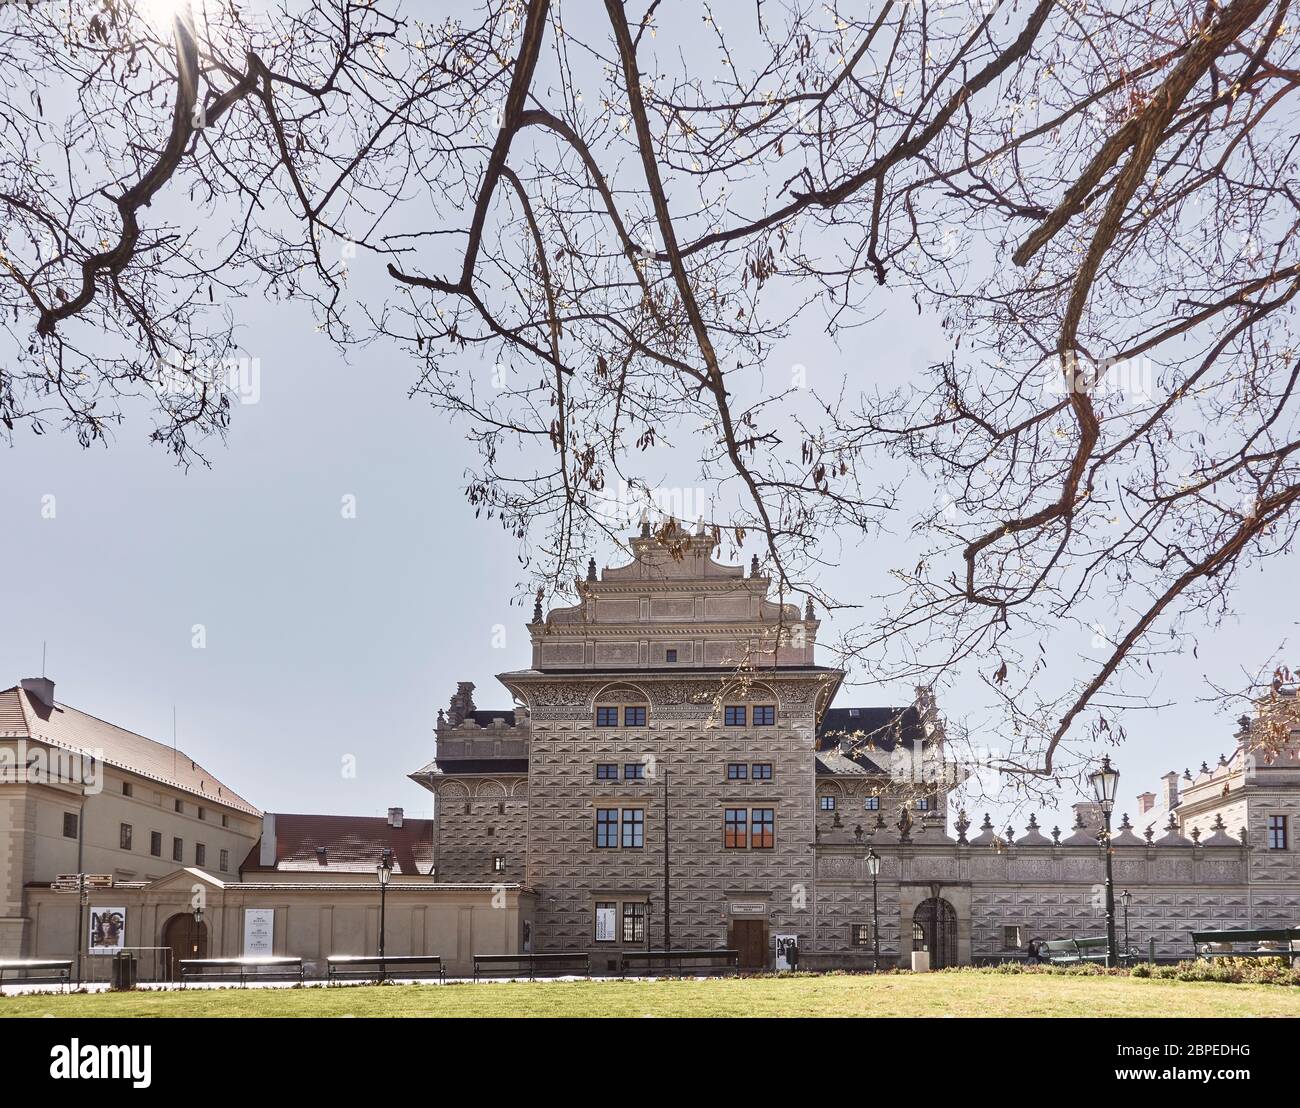 Château de Prague, République tchèque sans touristes pendant la pandémie de Covid19, par temps ensoleillé, à peine quelques habitants du coin Banque D'Images